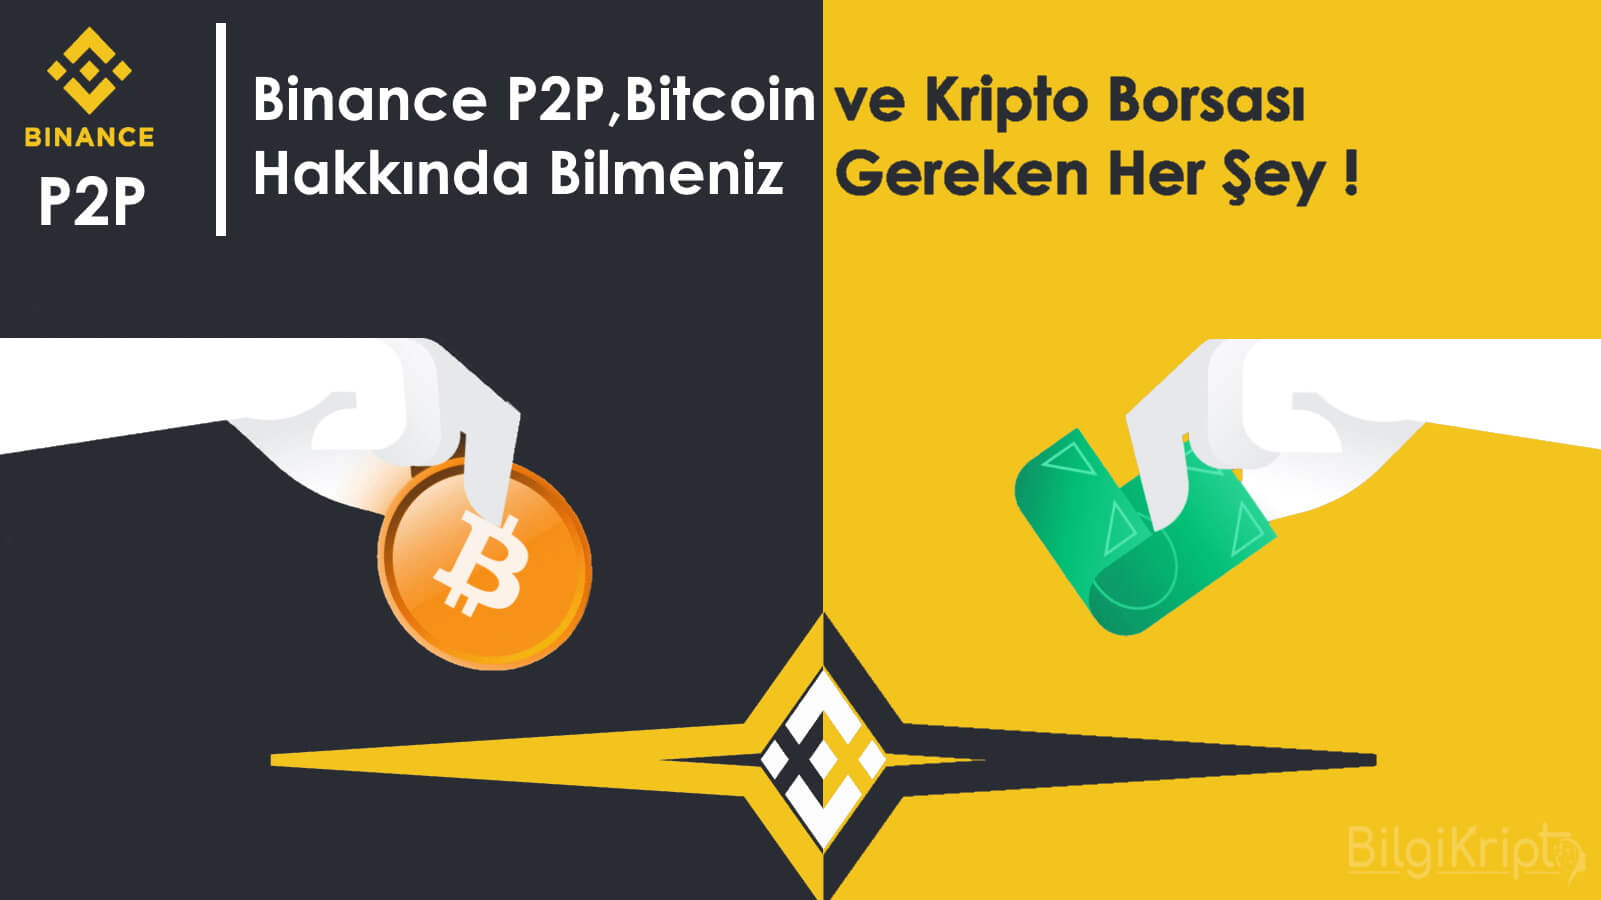 Binance P2P , Bitcoin ve Kripto Borsası Hakkında Bilmeniz Gereken Her Şey !